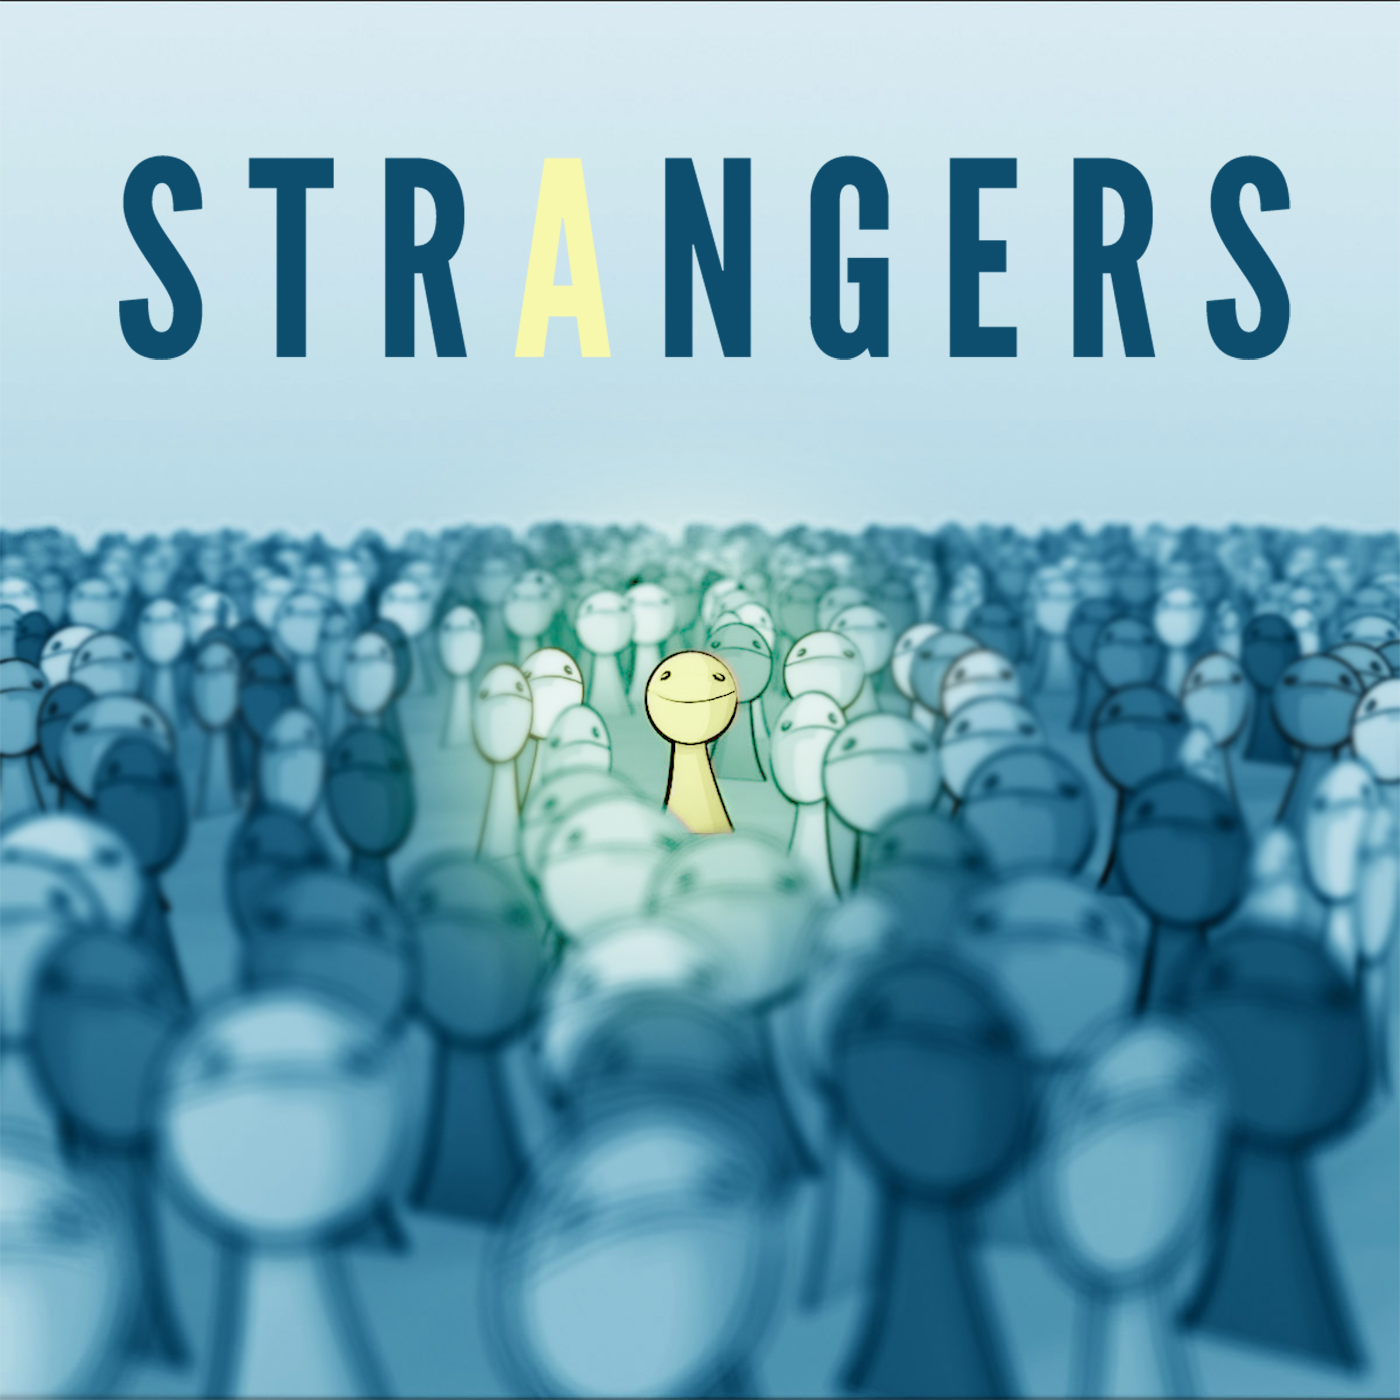 Strangers(英文單詞)